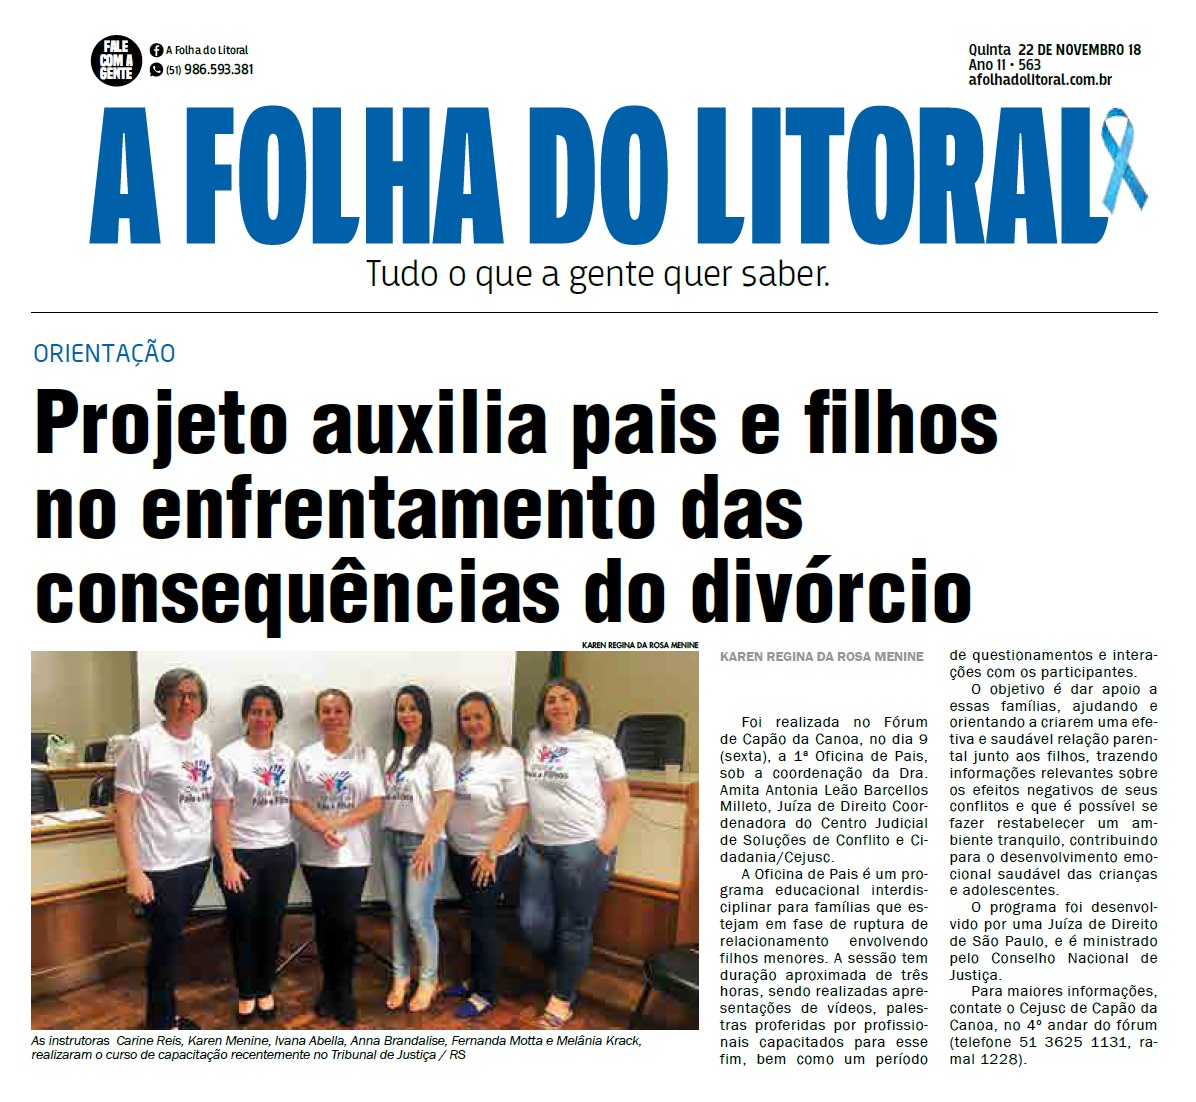 Matéria publicada no jornal 'Folha do Litoral', na edição 563 do dia 22 de Novembro de 2018.